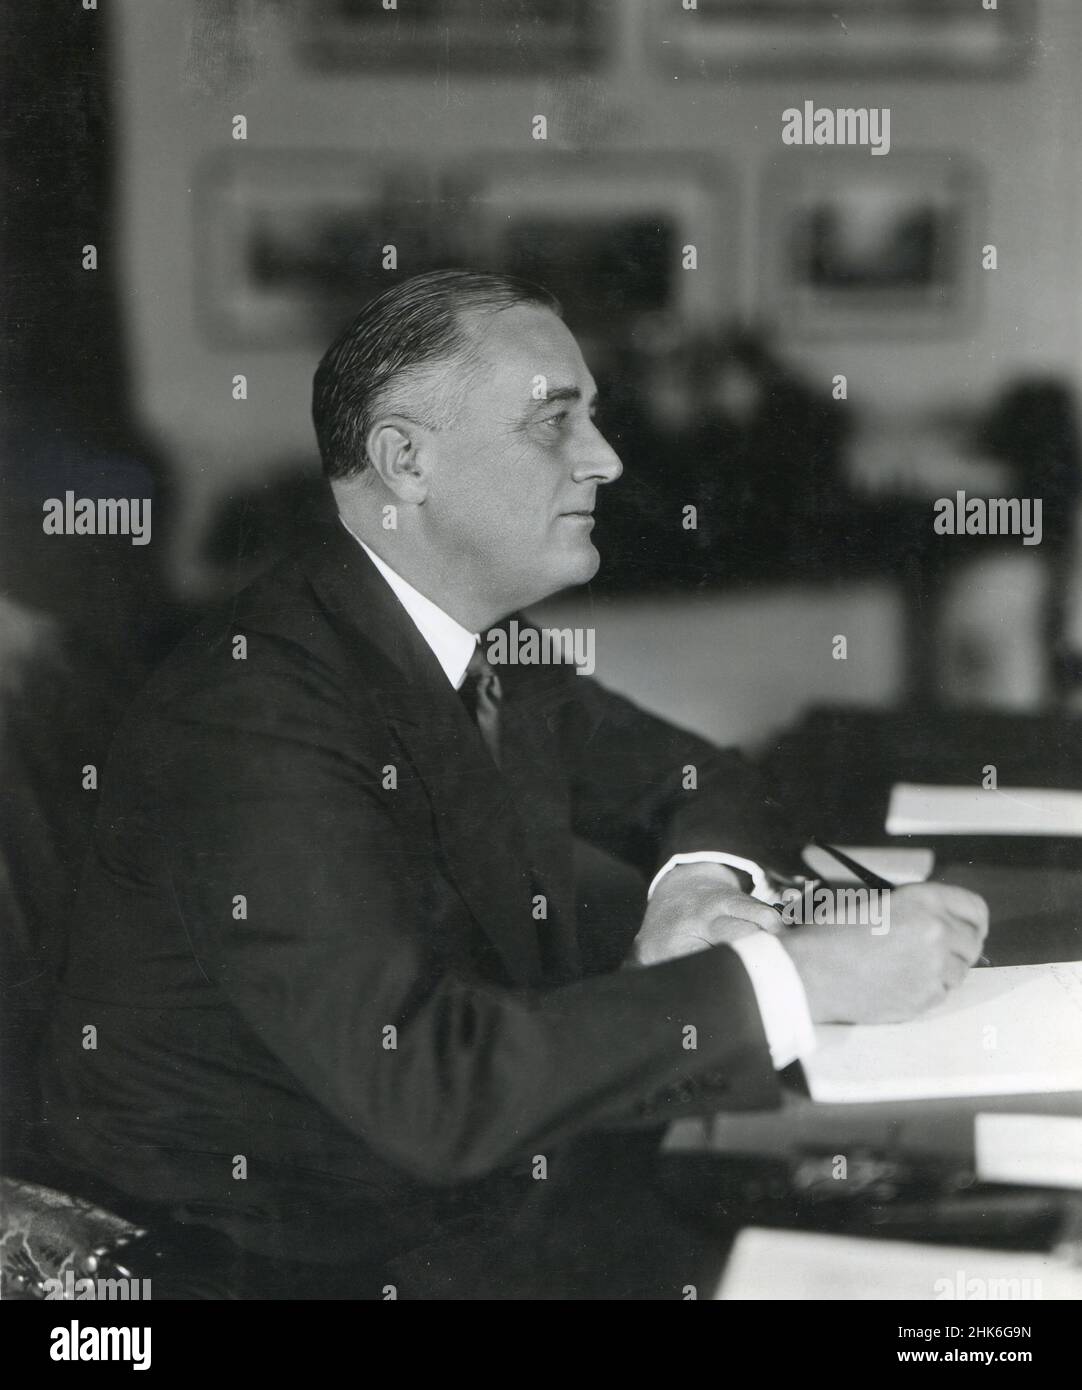 Début des années 1930 - le président Franklin D. Roosevelt est montré à son bureau à la Maison Blanche. Banque D'Images